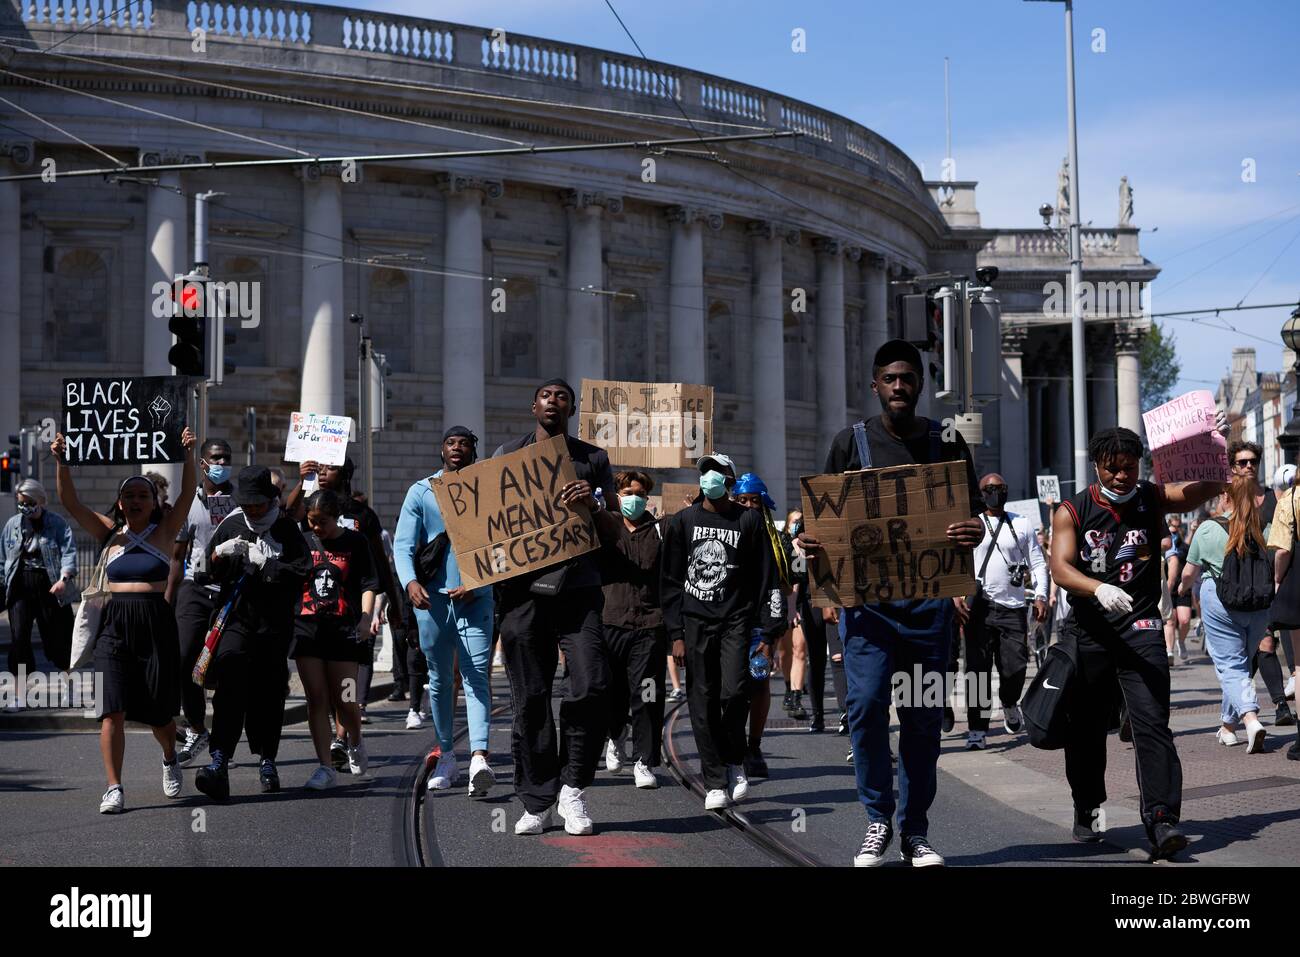 Les manifestants défilent dans la ville de Dublin en Irlande, dans le cadre des Black Lives, qui font face à des manifestations importantes, pour protester contre la mort de George Floyd aux États-Unis. Banque D'Images